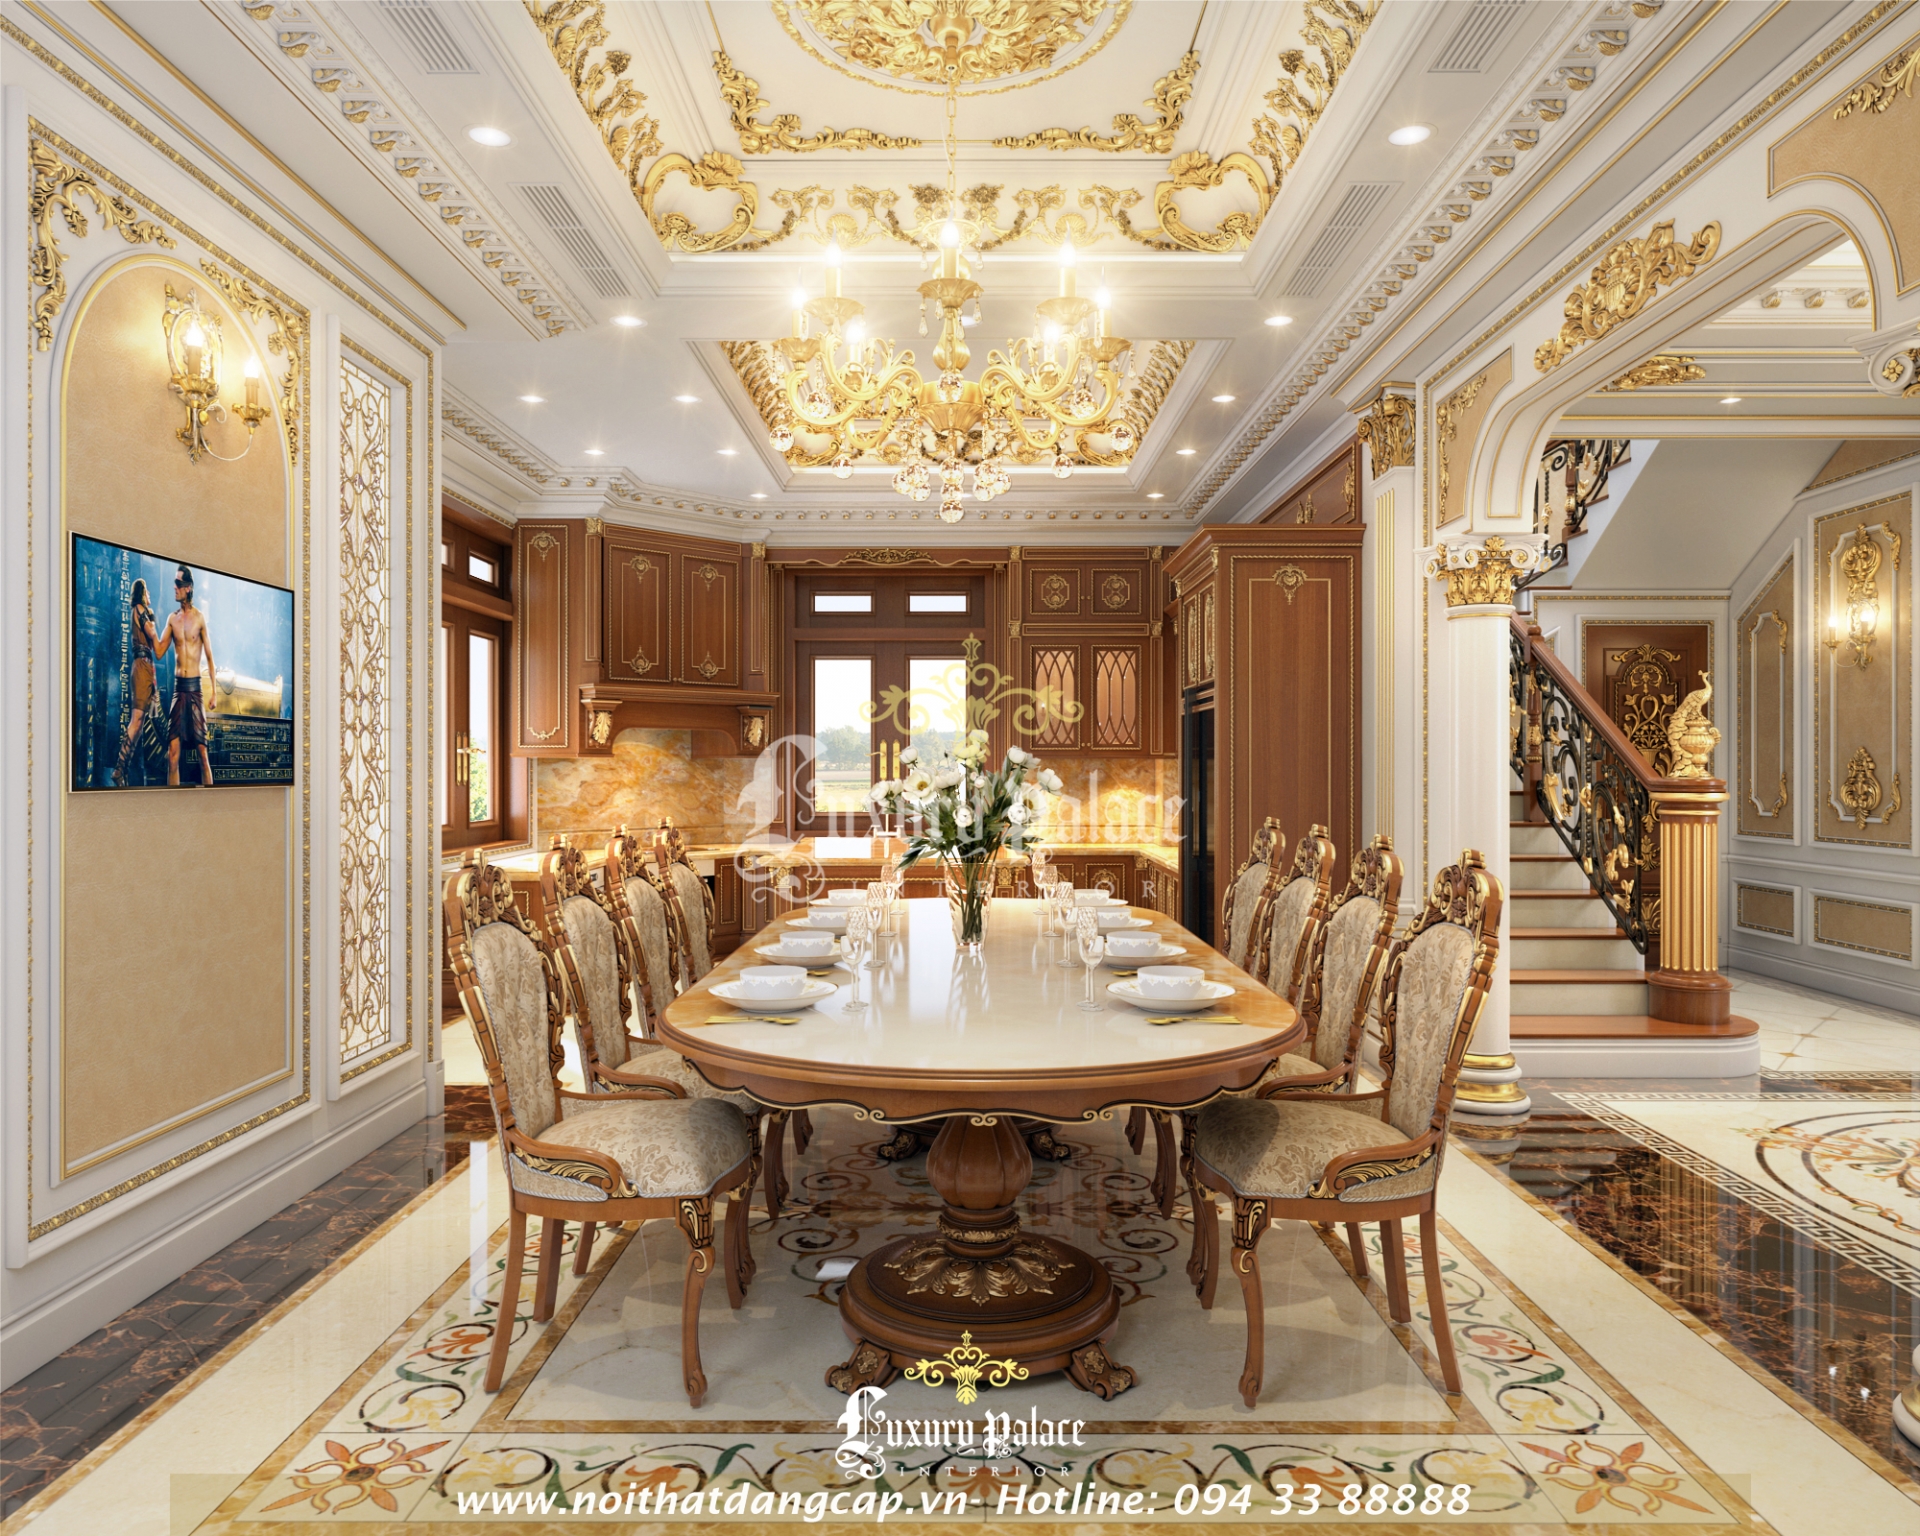 Nội thất phòng ăn biệt thự Lạng Sơn Luxury Palace thi công